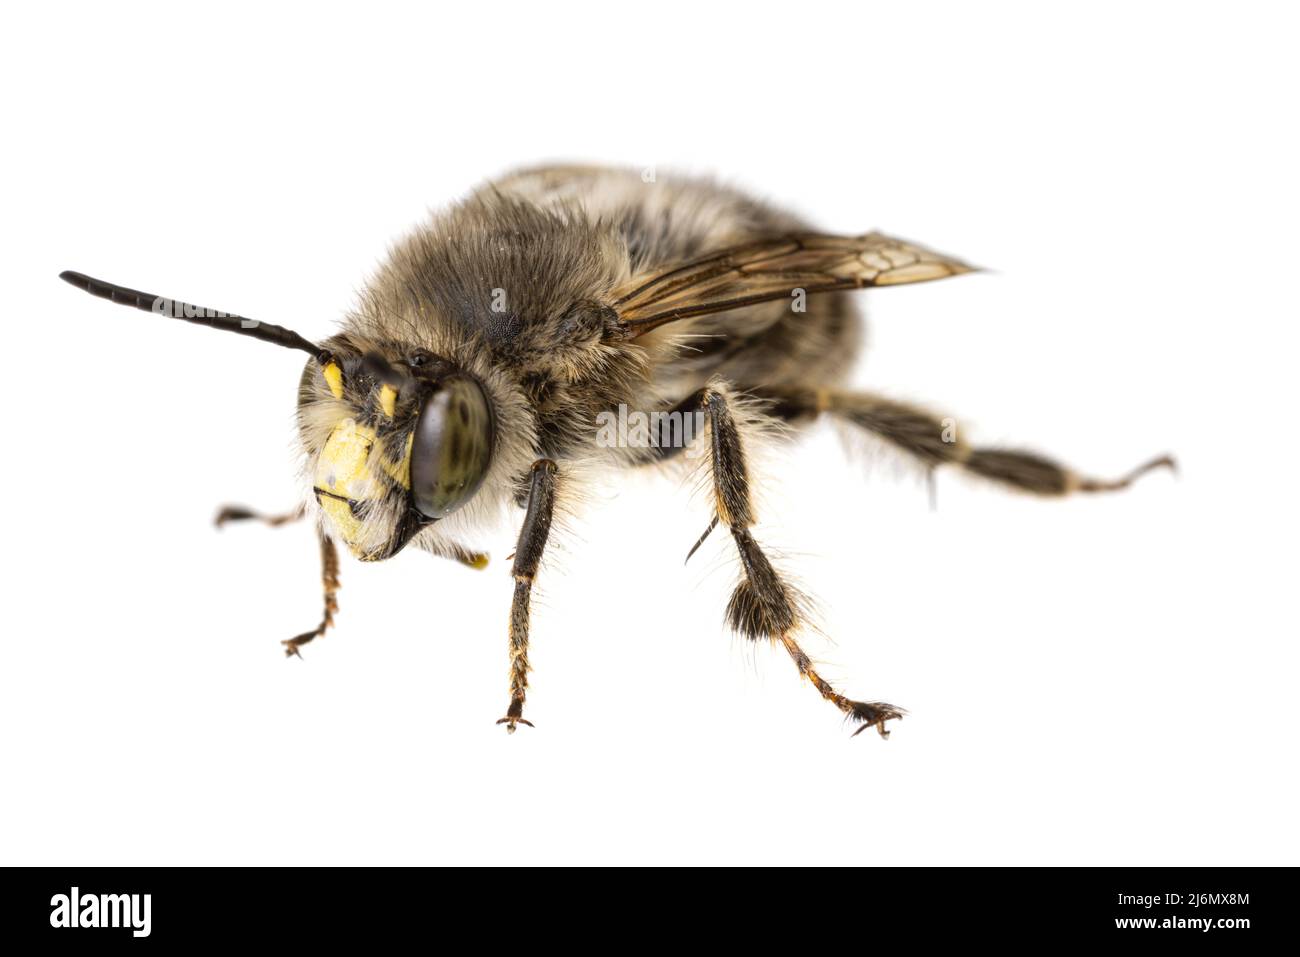 Insetti d'europa - api: Macro di maschi Anthophora crinipes (Pelzbienen) isolato su sfondo bianco - vista frontale Foto Stock